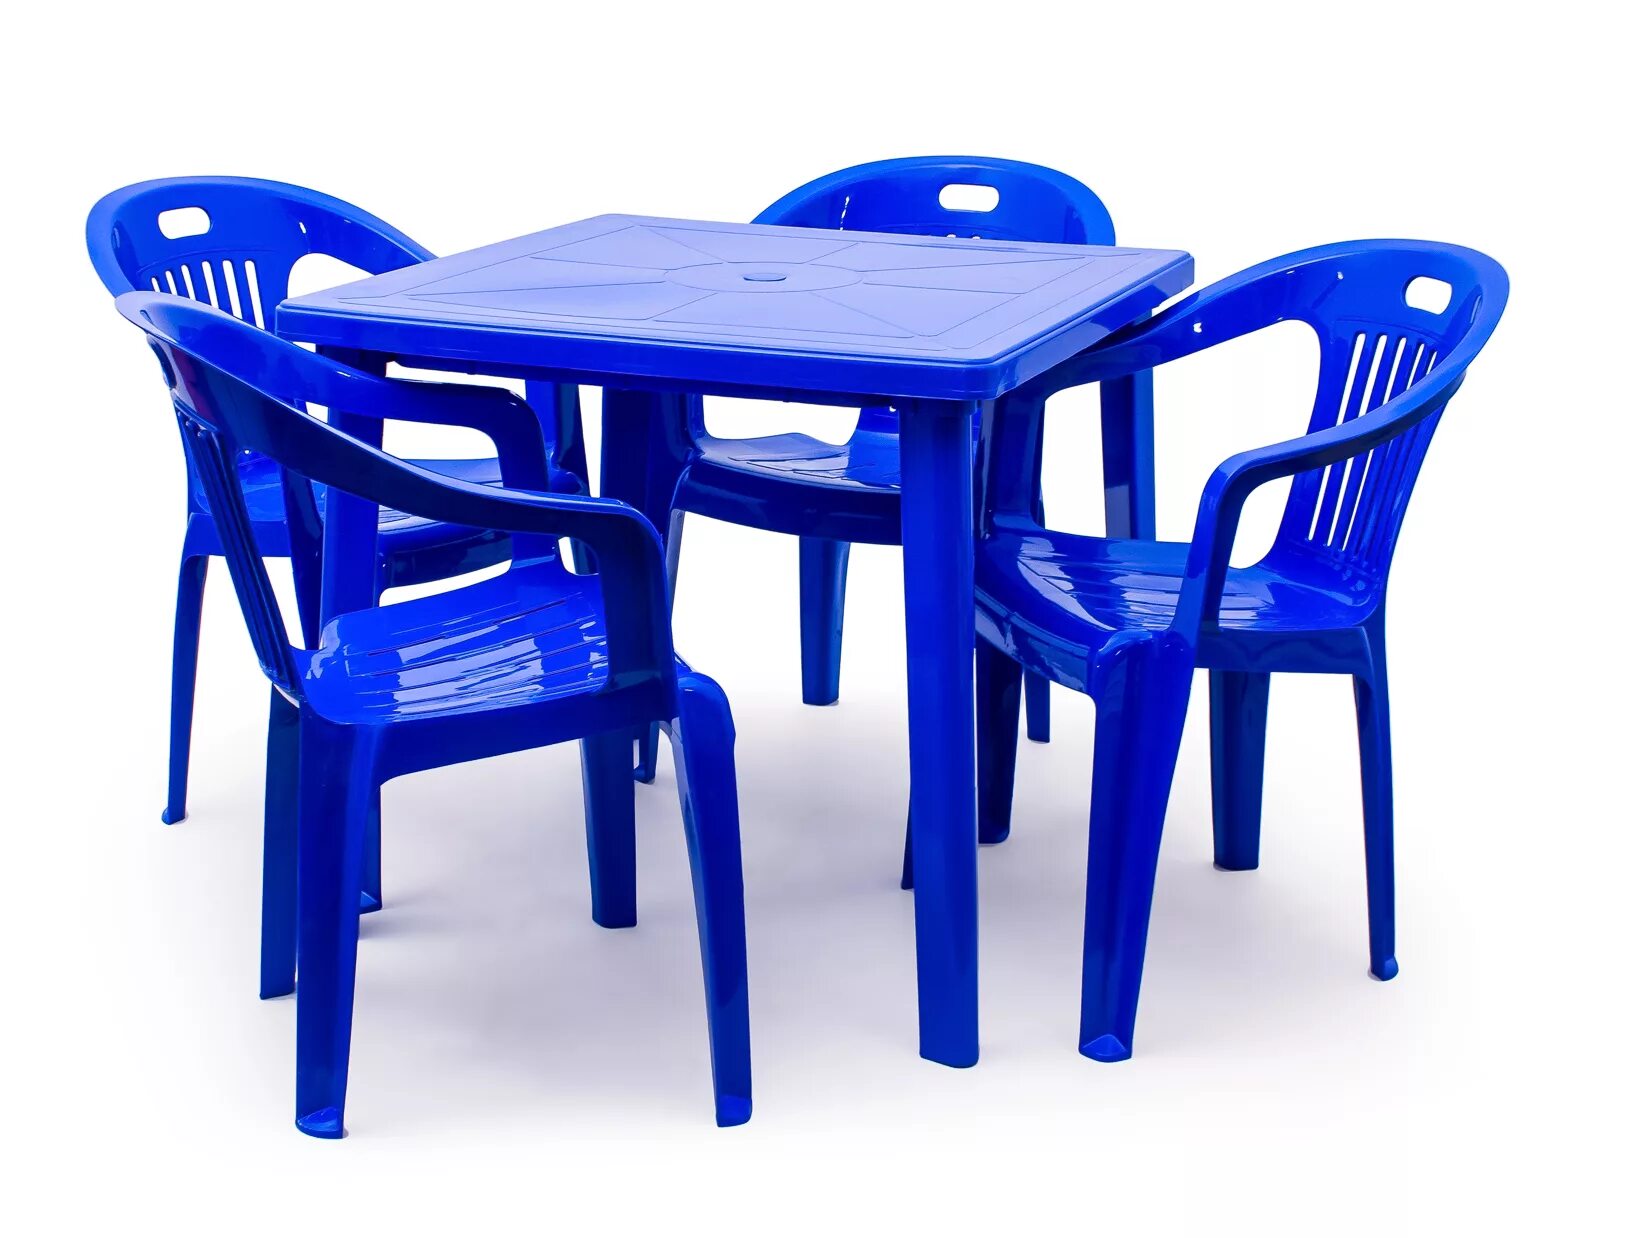 Озон интернет магазин пластиковых. Стол стандарт пластик групп квадратный 800х800. Комплект пластиковой мебели (стол Нирвана + 8 кресел Флинт). Кресло стандарт пластик комфорт-1. Набор мебели 4пр стол(бук) + 4стула(морская волна) Veno.